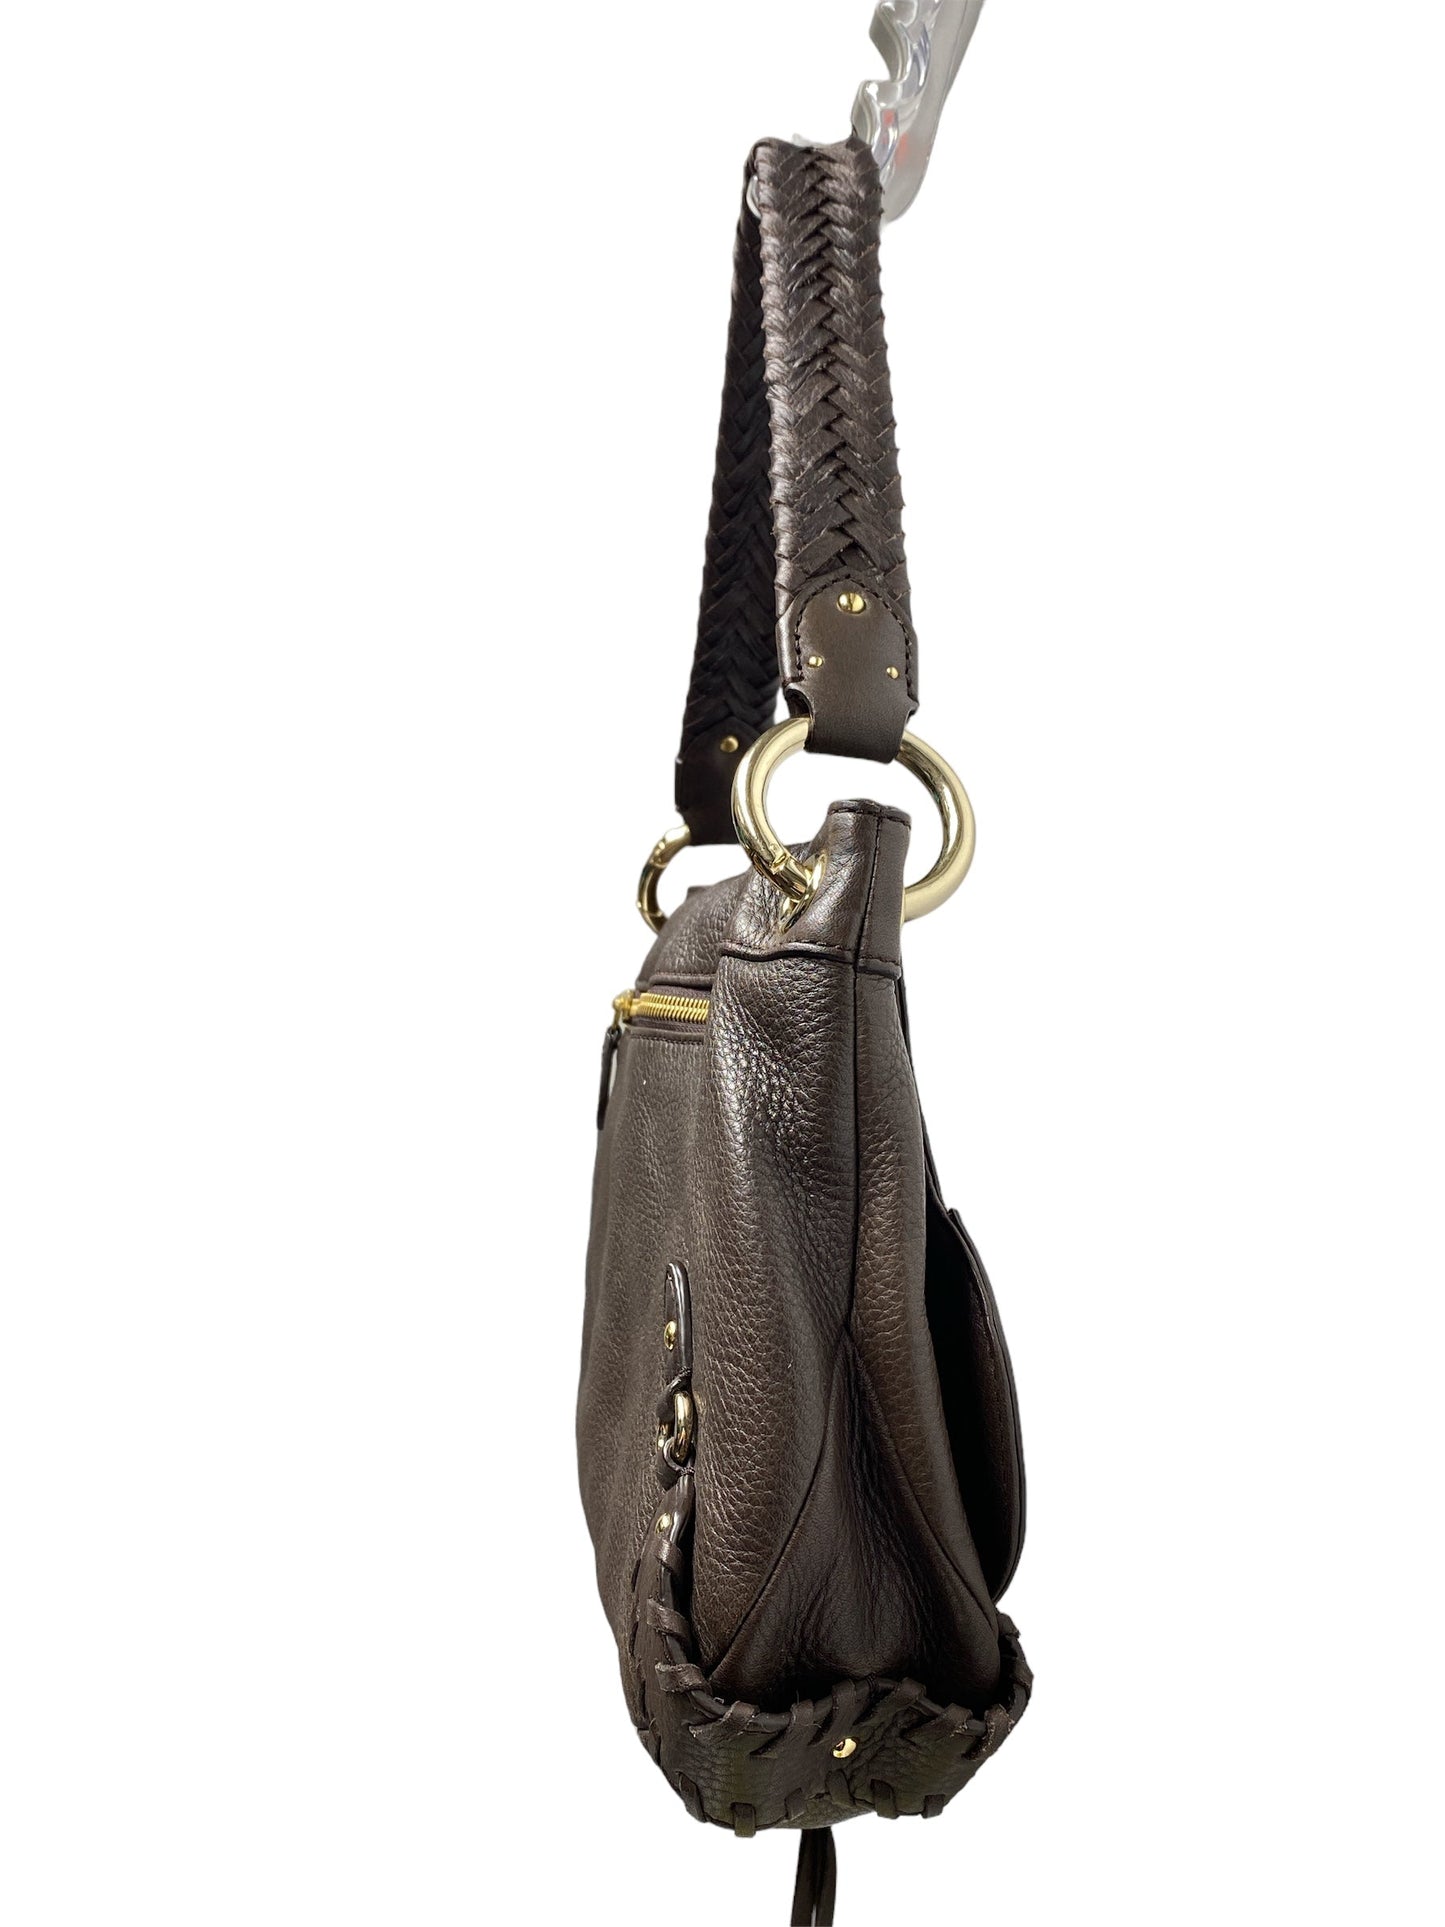 Handbag Designer By Cole-haan  Size: Large